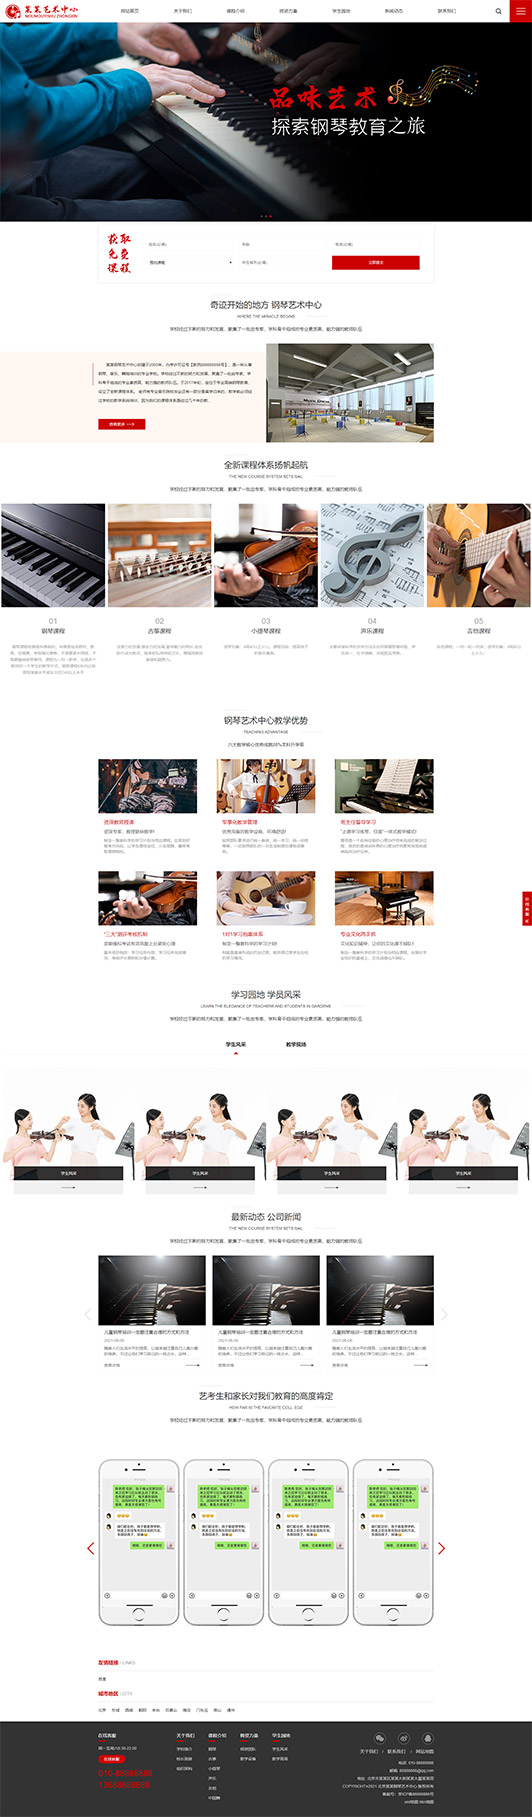 广东钢琴艺术培训公司响应式企业网站